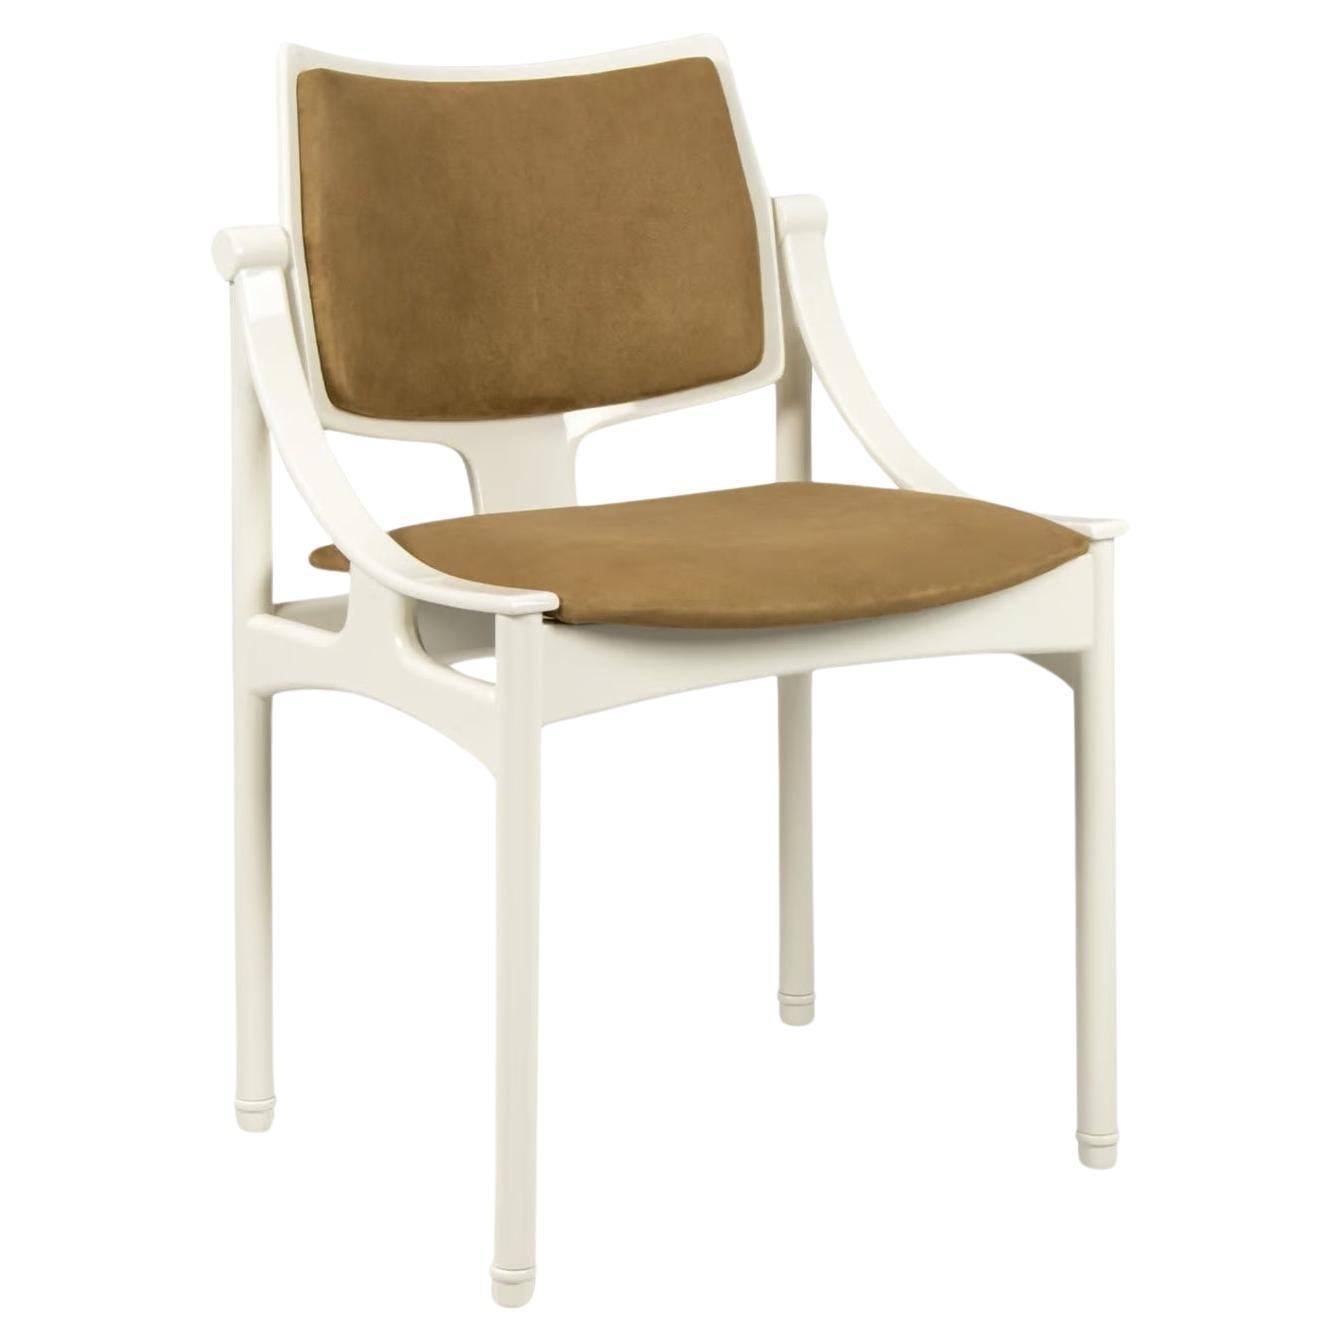 Moderner Esszimmerstuhl mit schlichtem und minimalistischem Design. Er hat einen Holzrahmen und Holzbeine mit einer Rückenlehne, die sich sanft um die Spitze wölbt. Er eignet sich perfekt für ein ausgedehntes Mittagessen zu Hause und verleiht jedem